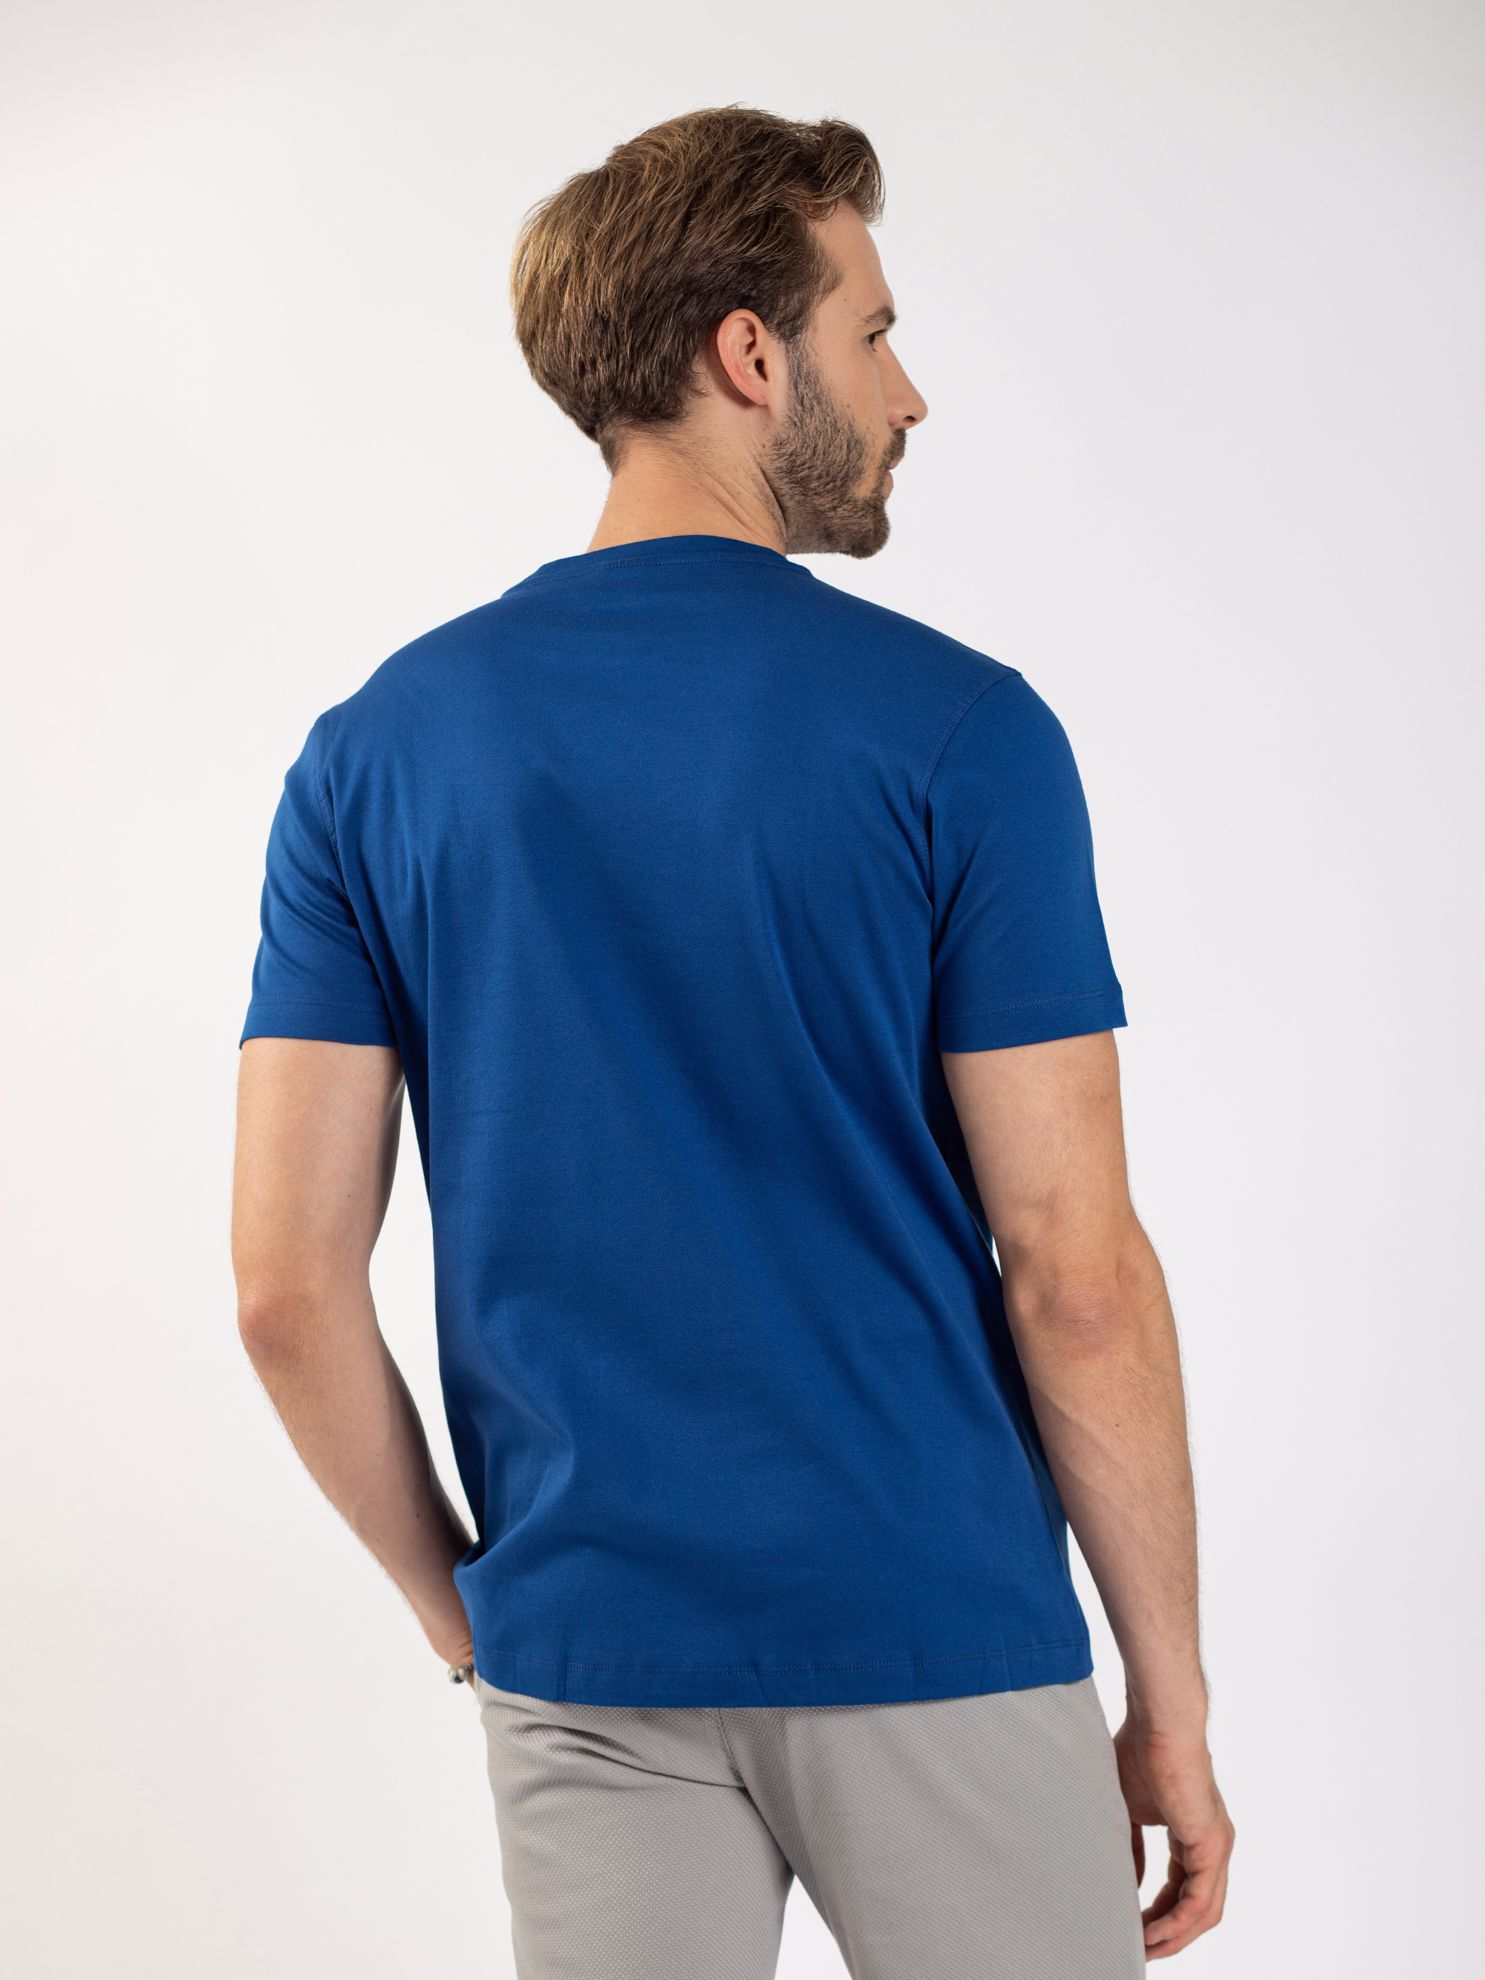 Karaca Erkek Slim Fit Tişört-Havacı Mavi. ürün görseli